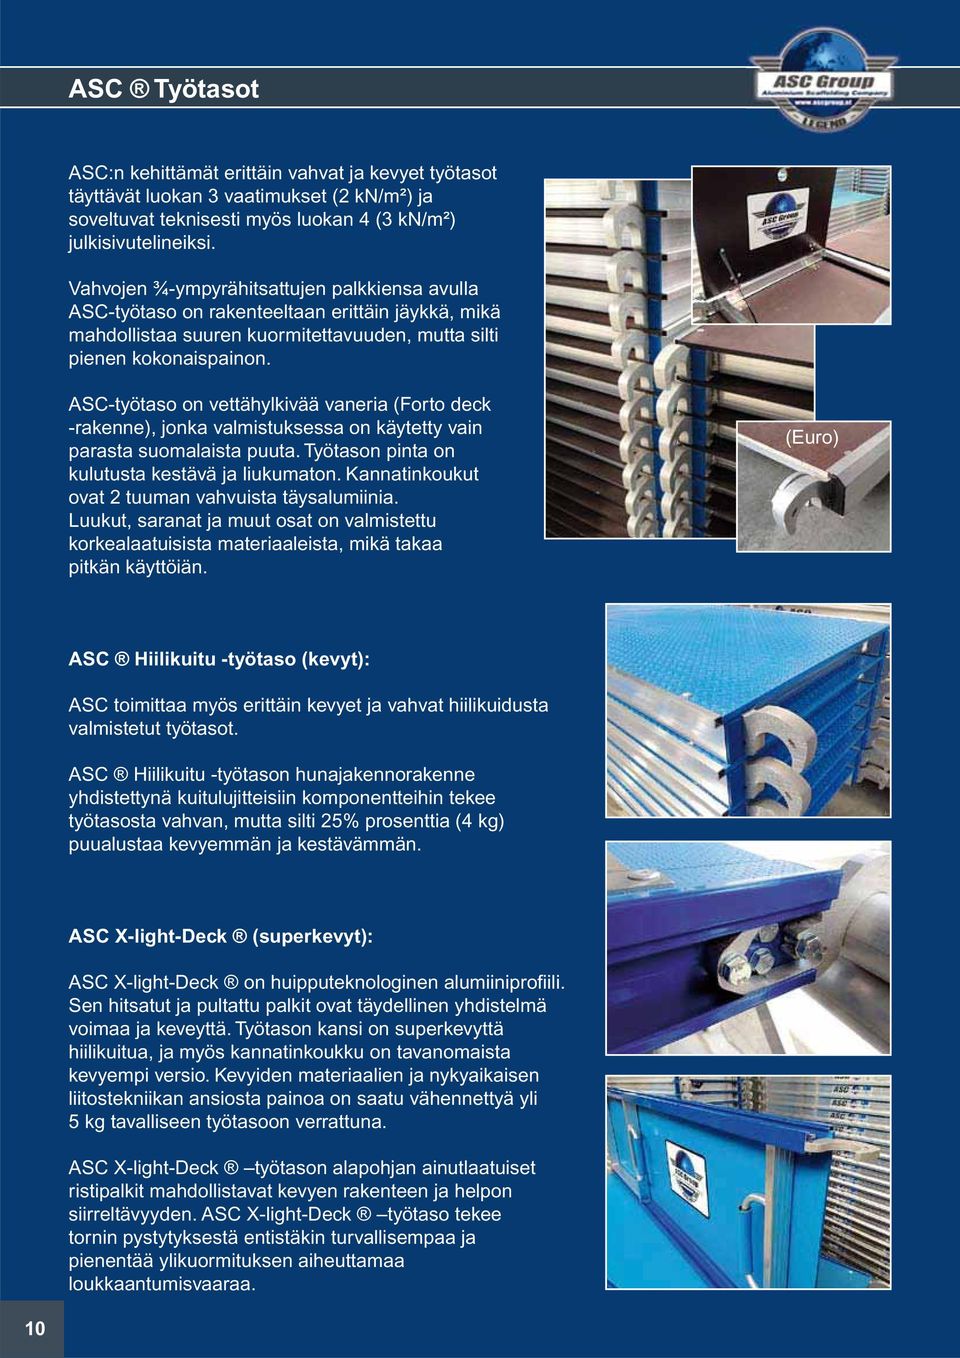 ASC-työtaso on vettähylkivää vaneria (Forto deck -rakenne), jonka valmistuksessa on käytetty vain parasta suomalaista puuta. Työtason pinta on kulutusta kestävä ja liukumaton.